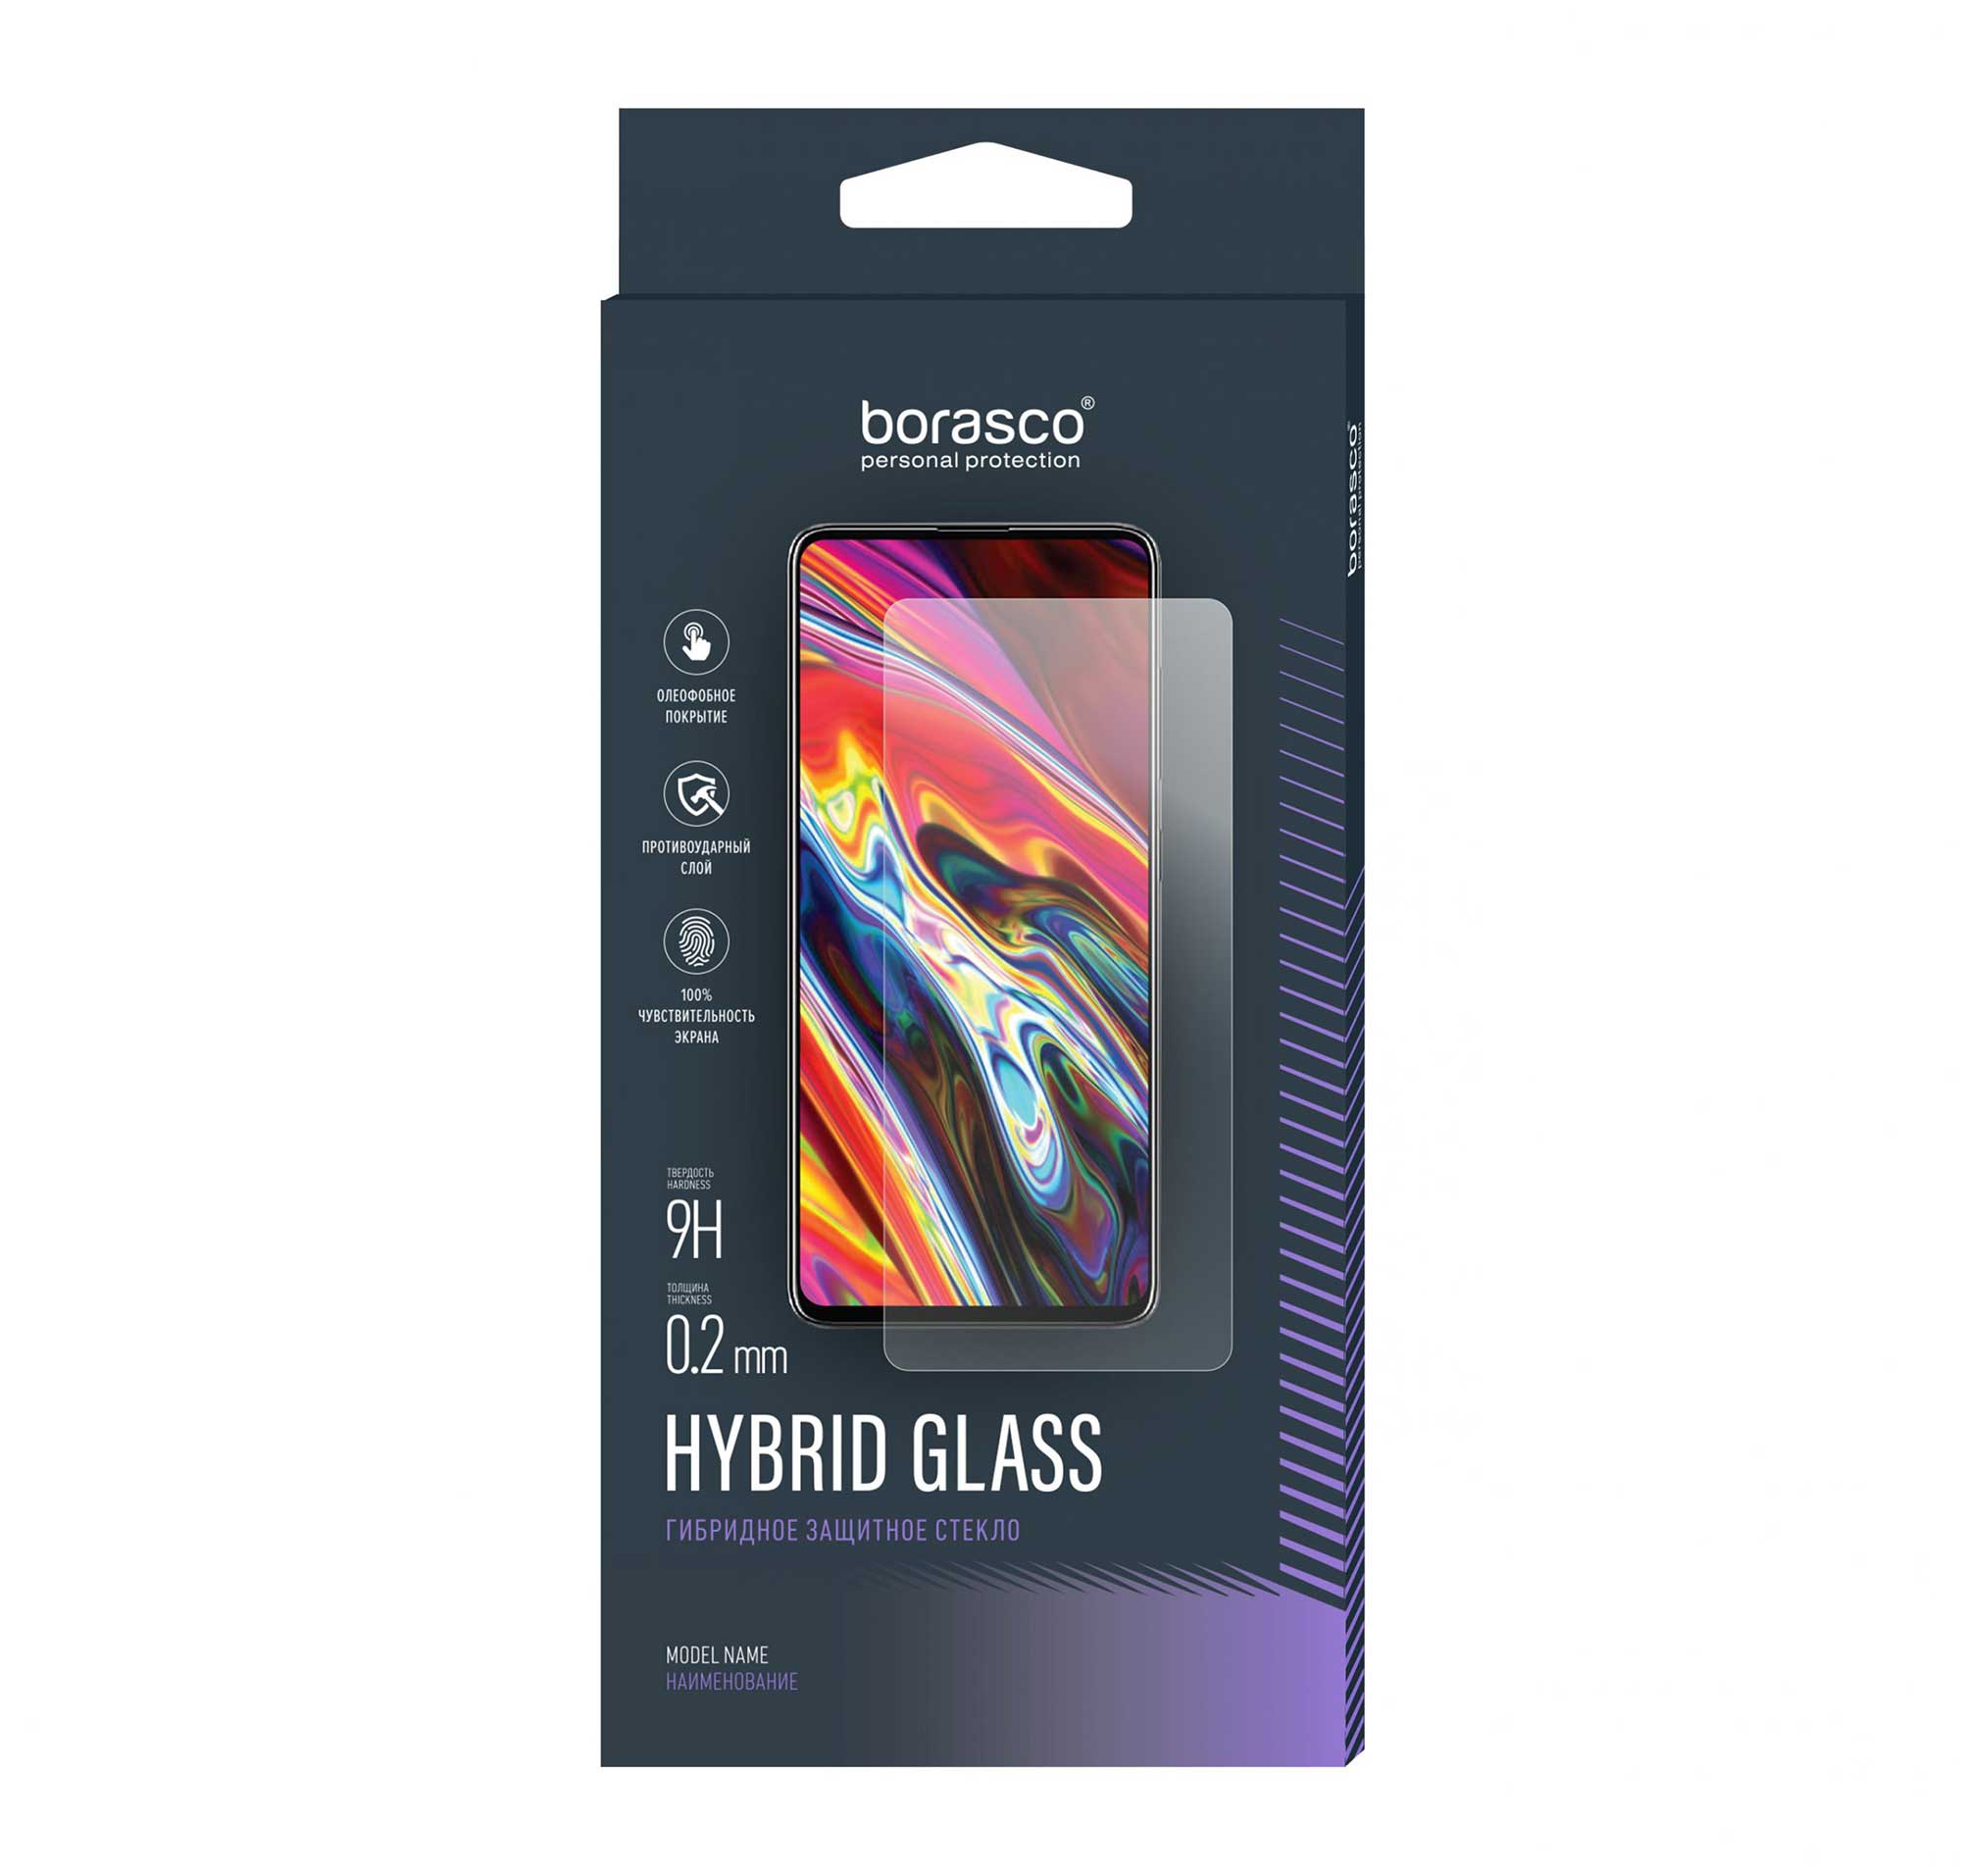 Защитное стекло Hybrid Glass для ZTE Blade A3 2020 силиконовый чехол цветы гжель на zte blade a3 2019 зте блейд a3 2019